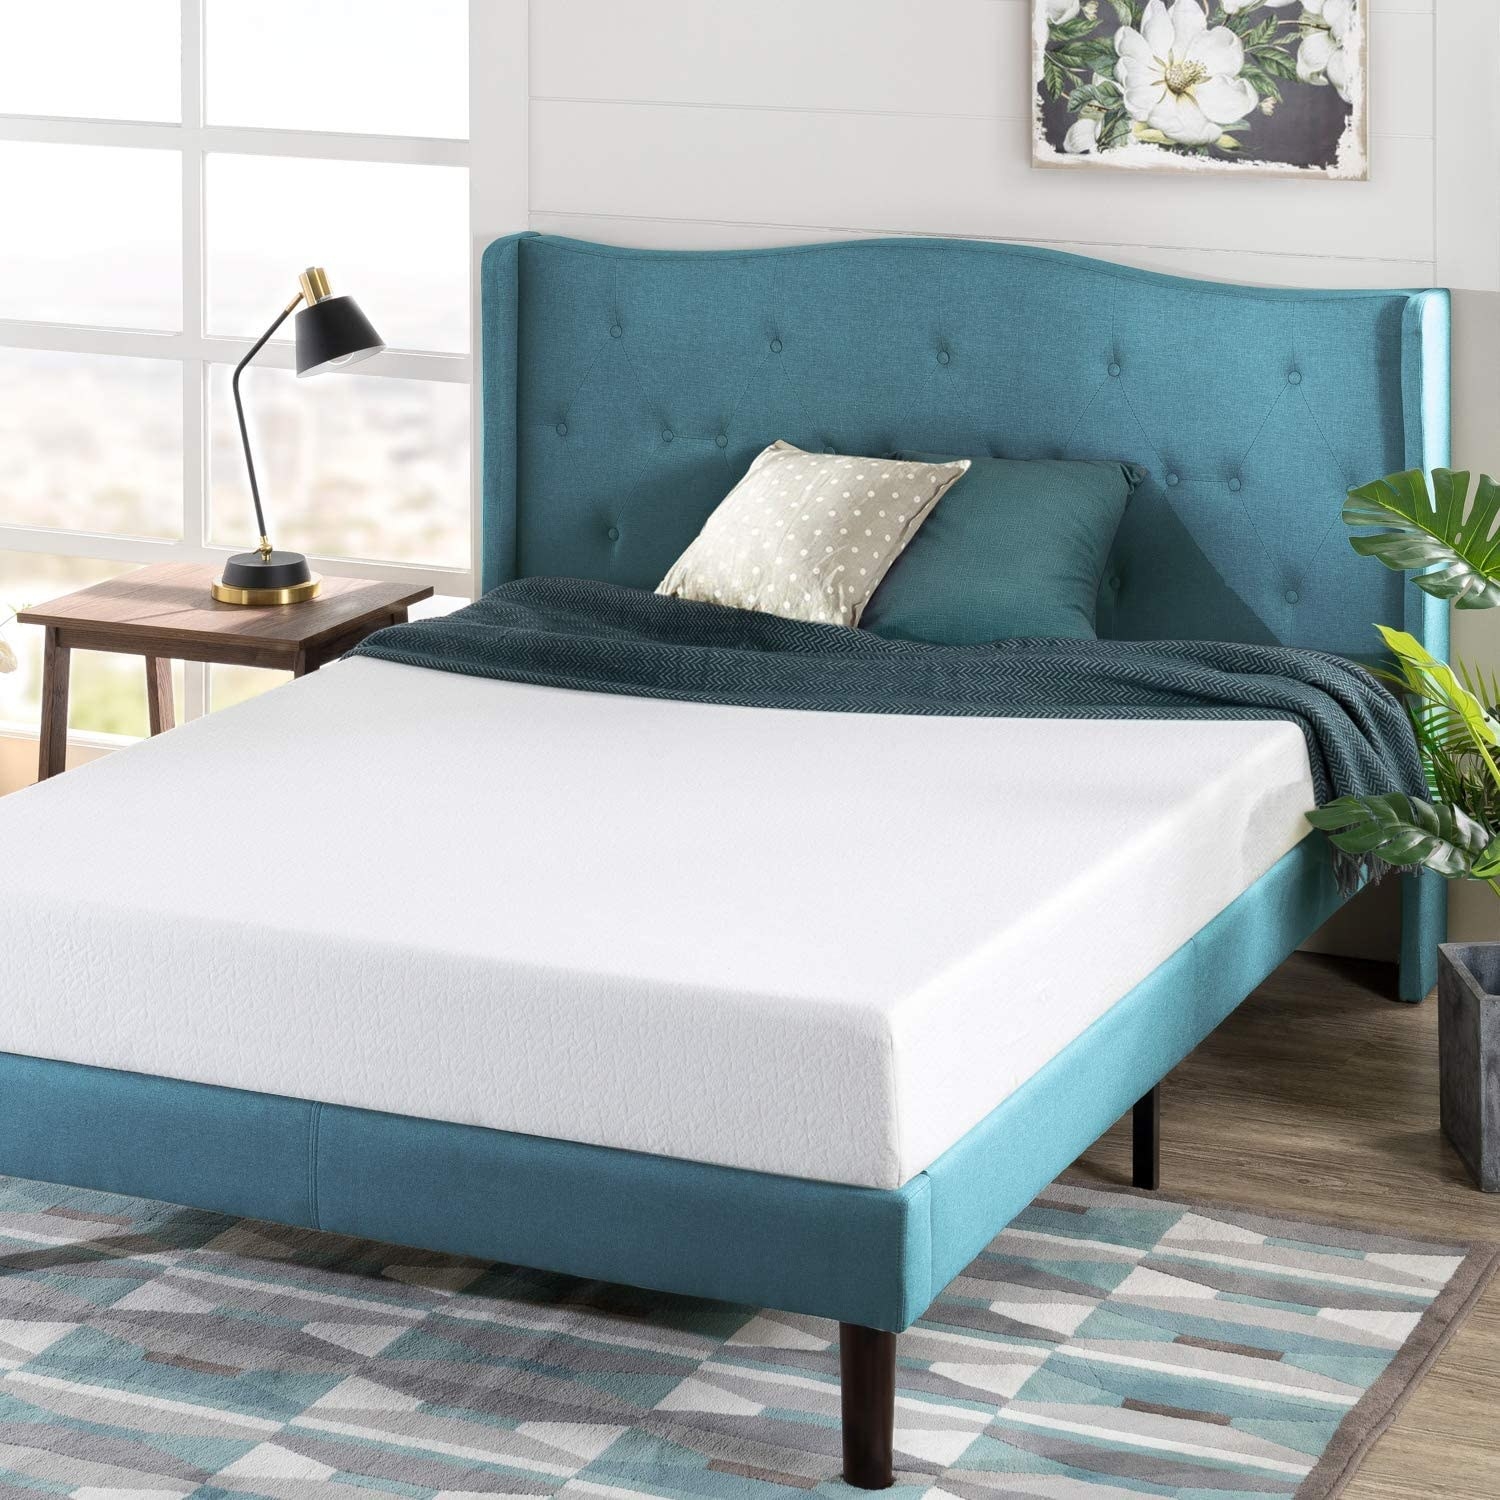 mattress on a bed